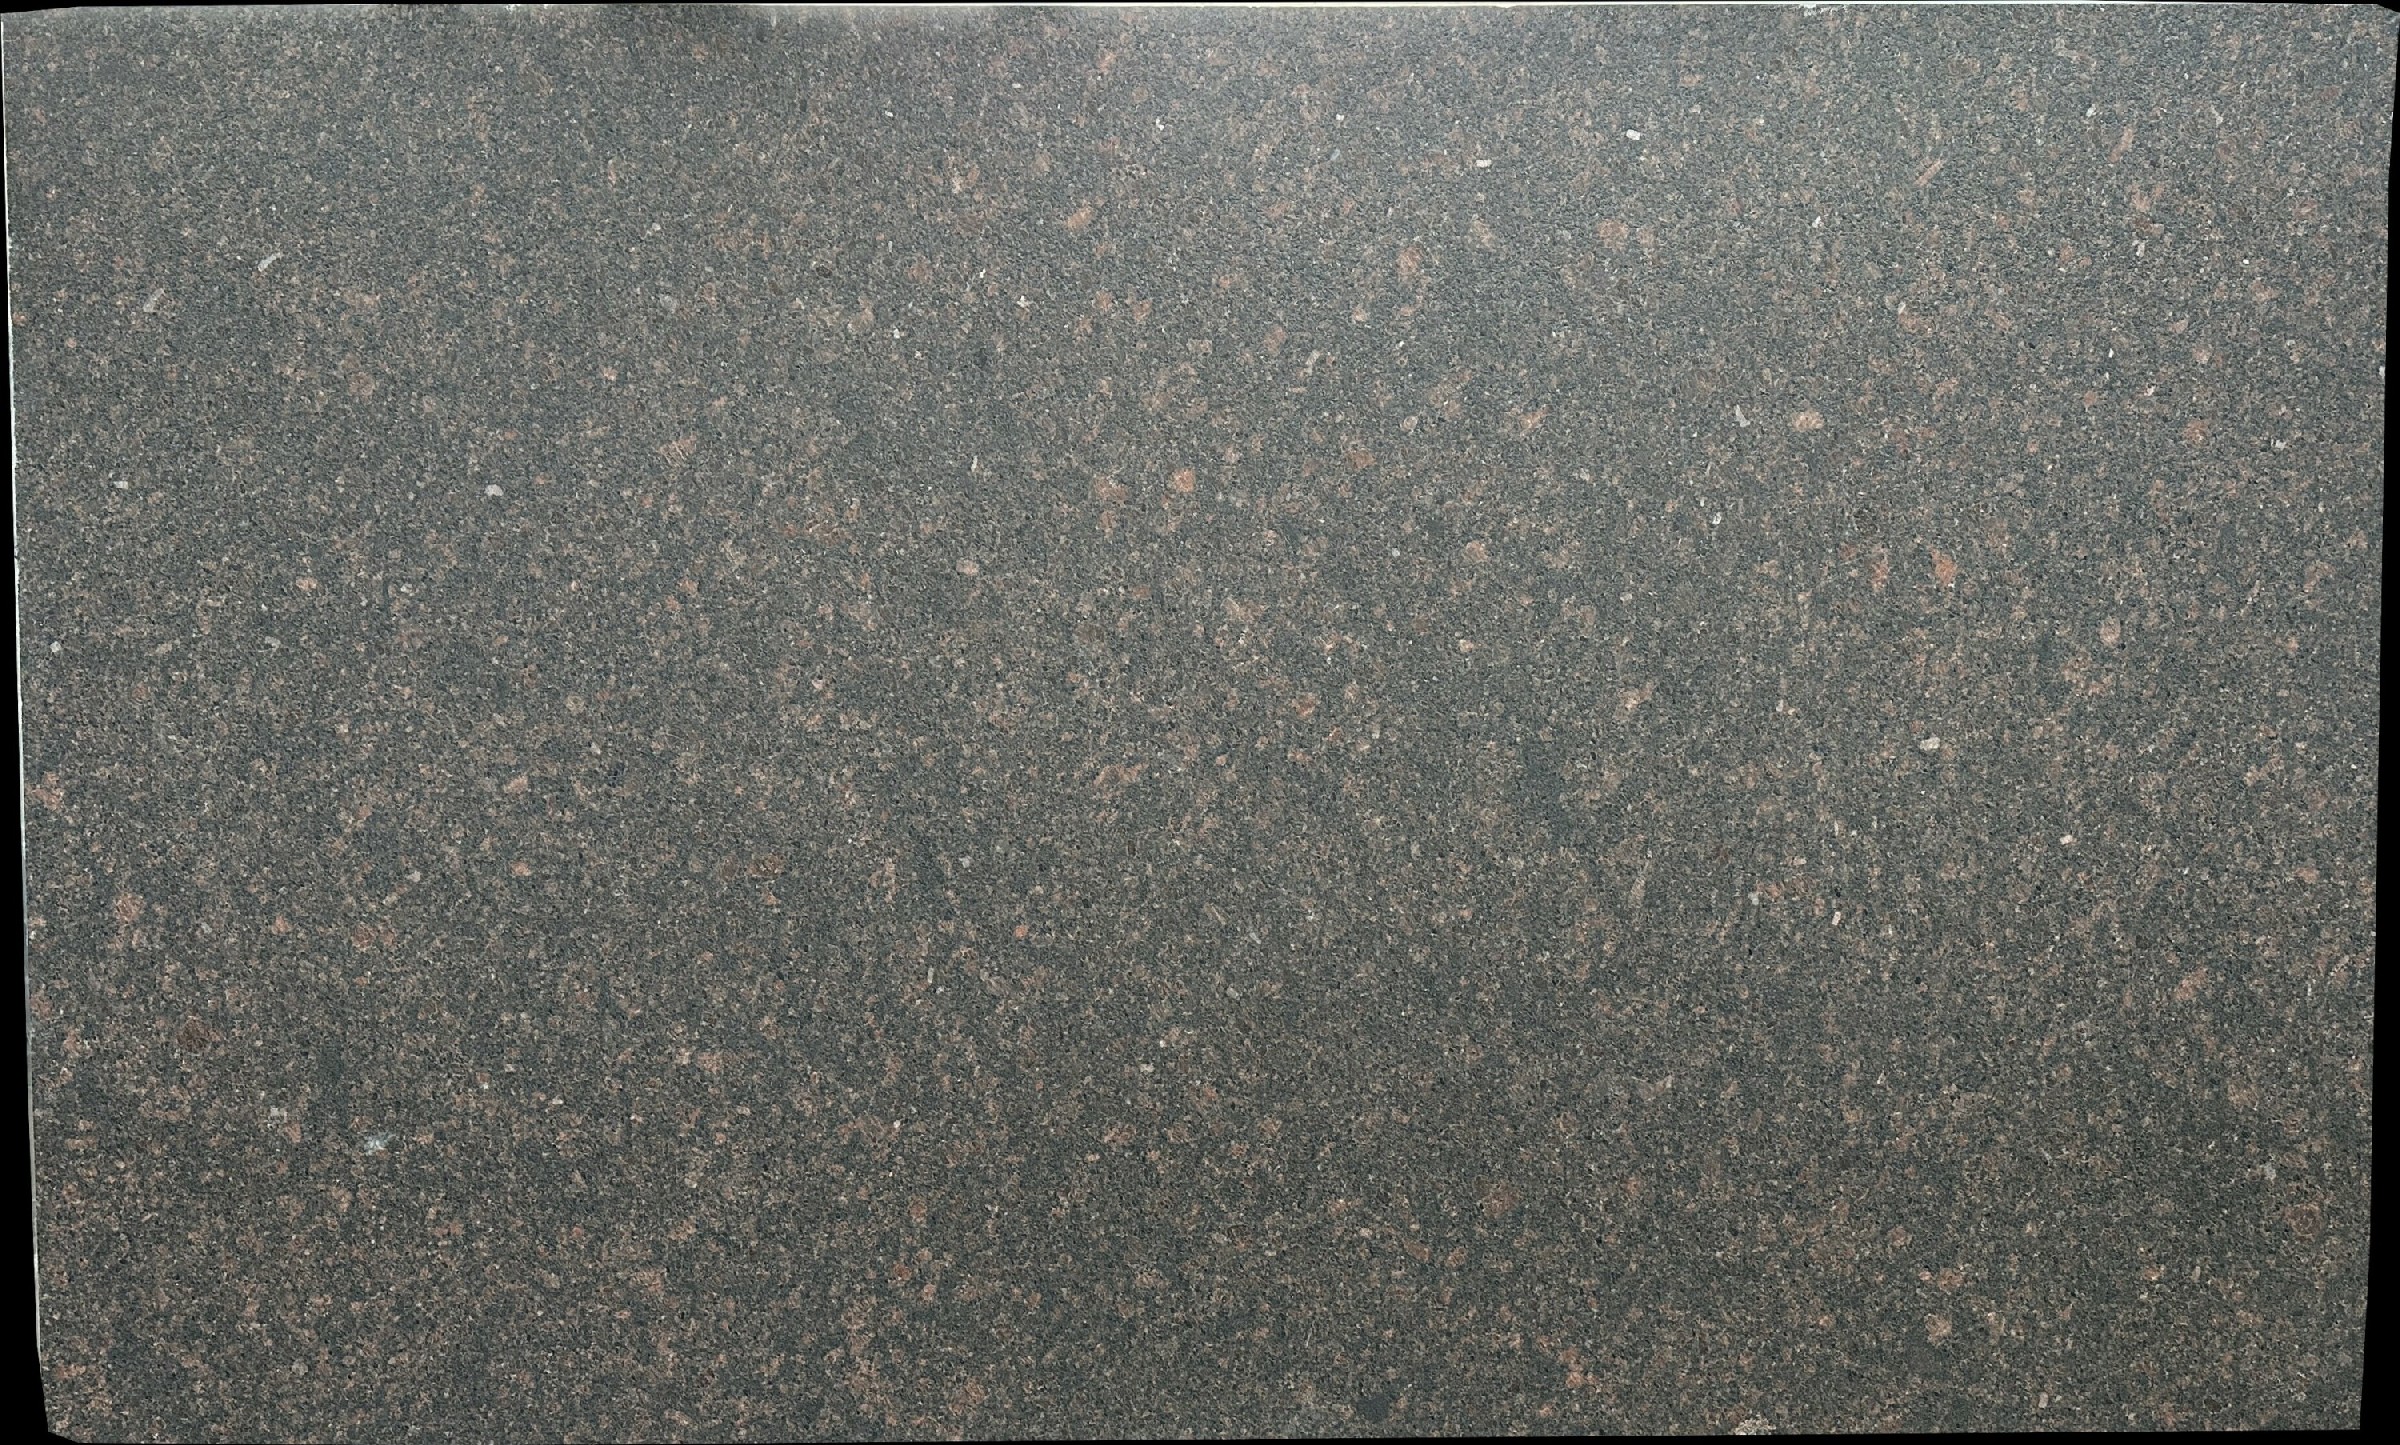 Tan Brown Granite Slabs for Countertops - E04895 - DDL